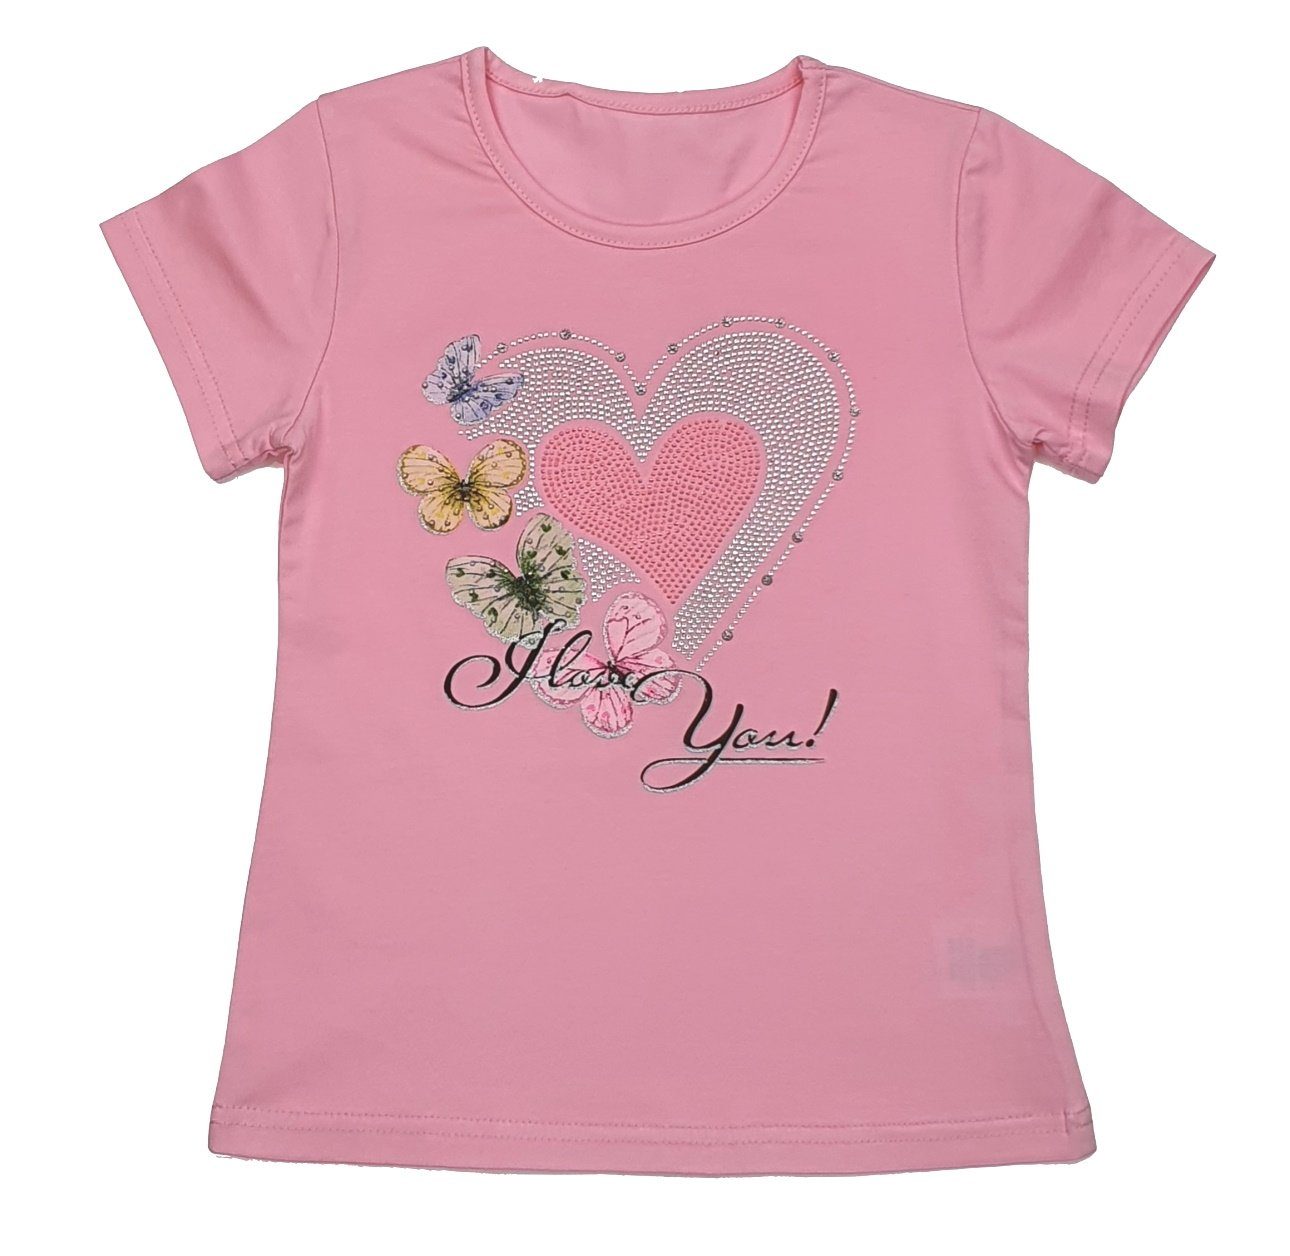 MS87 Rosa Fashion Mädchen Girls T-Shirt T-Shirt Shirt Sommer